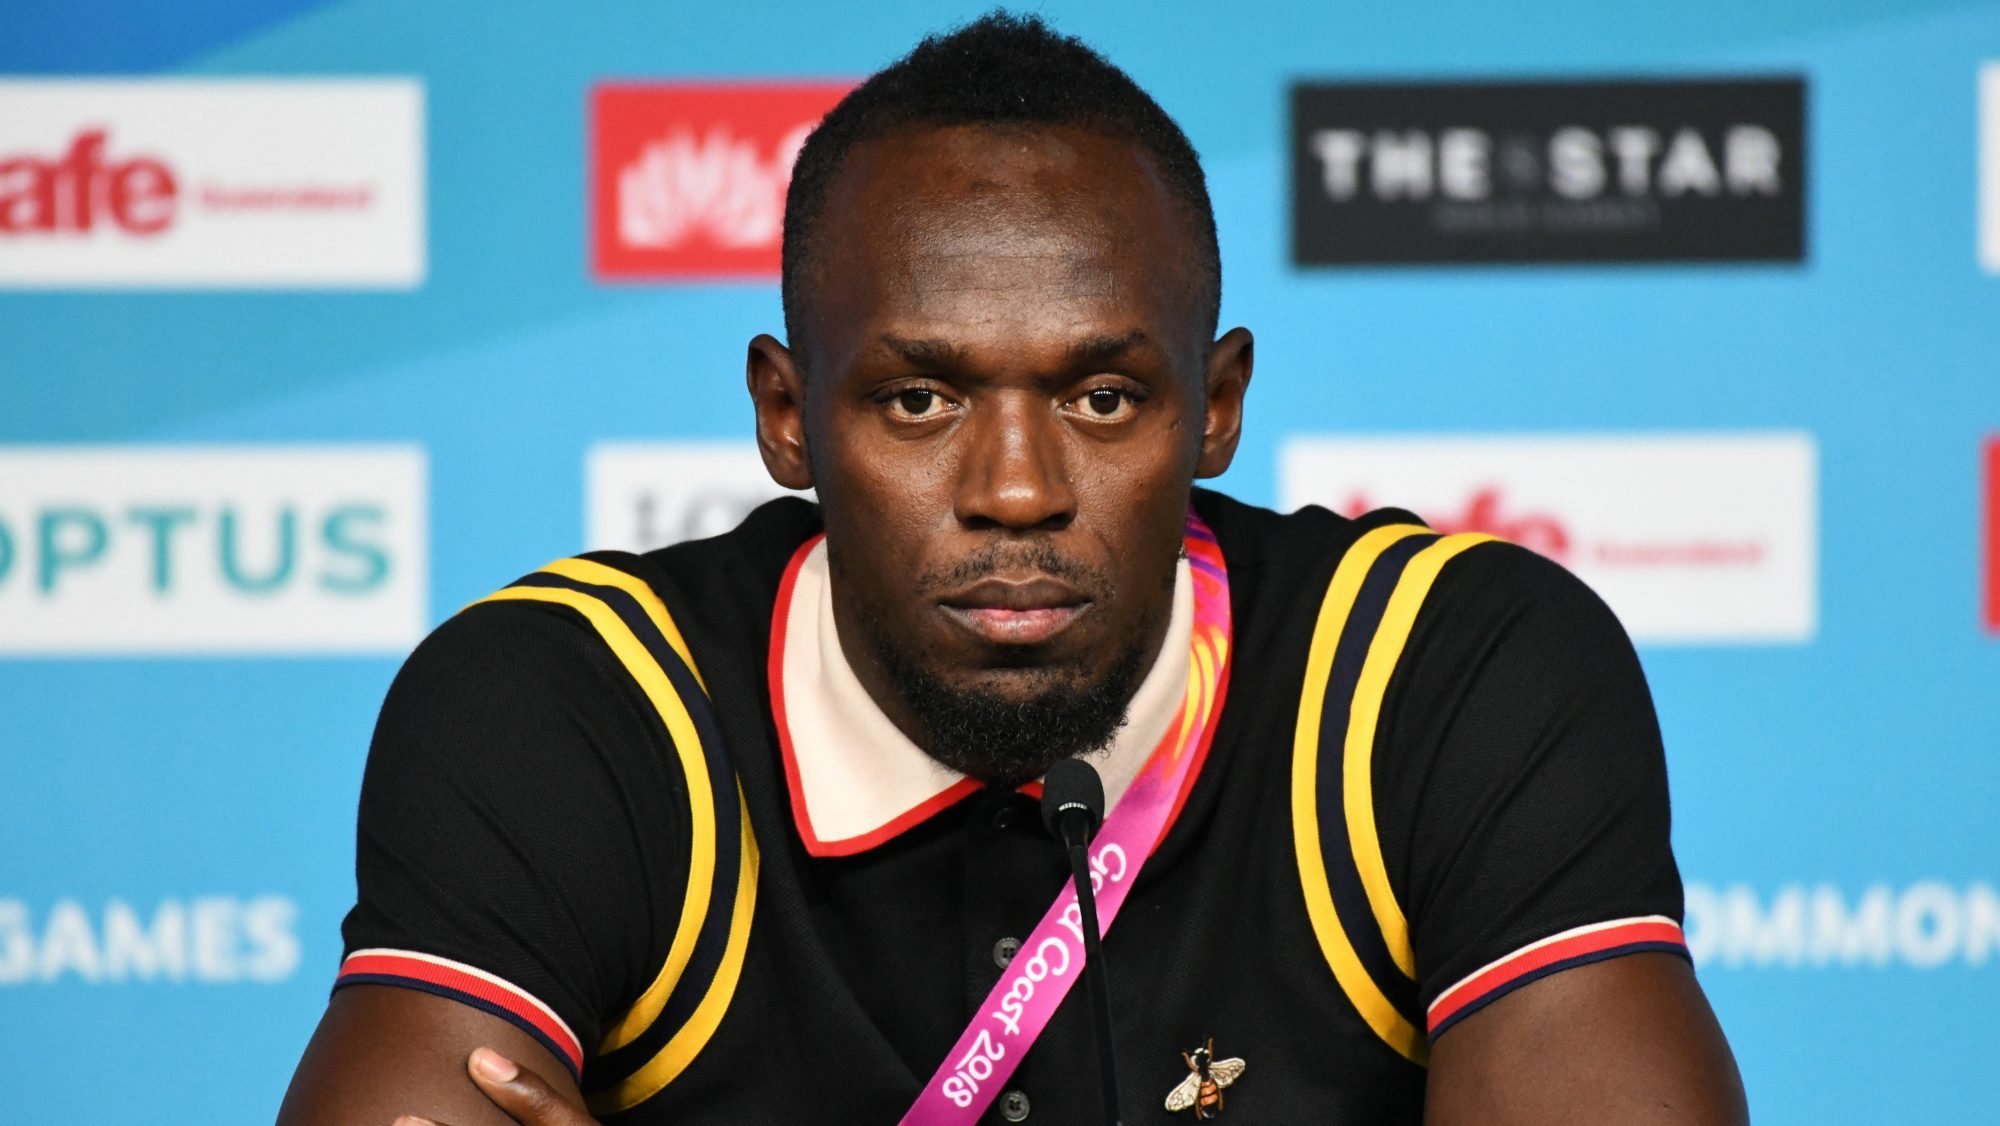 Bolt assumiu a intenção de iniciar uma carreira no futebol, mas isso nunca se concretizou